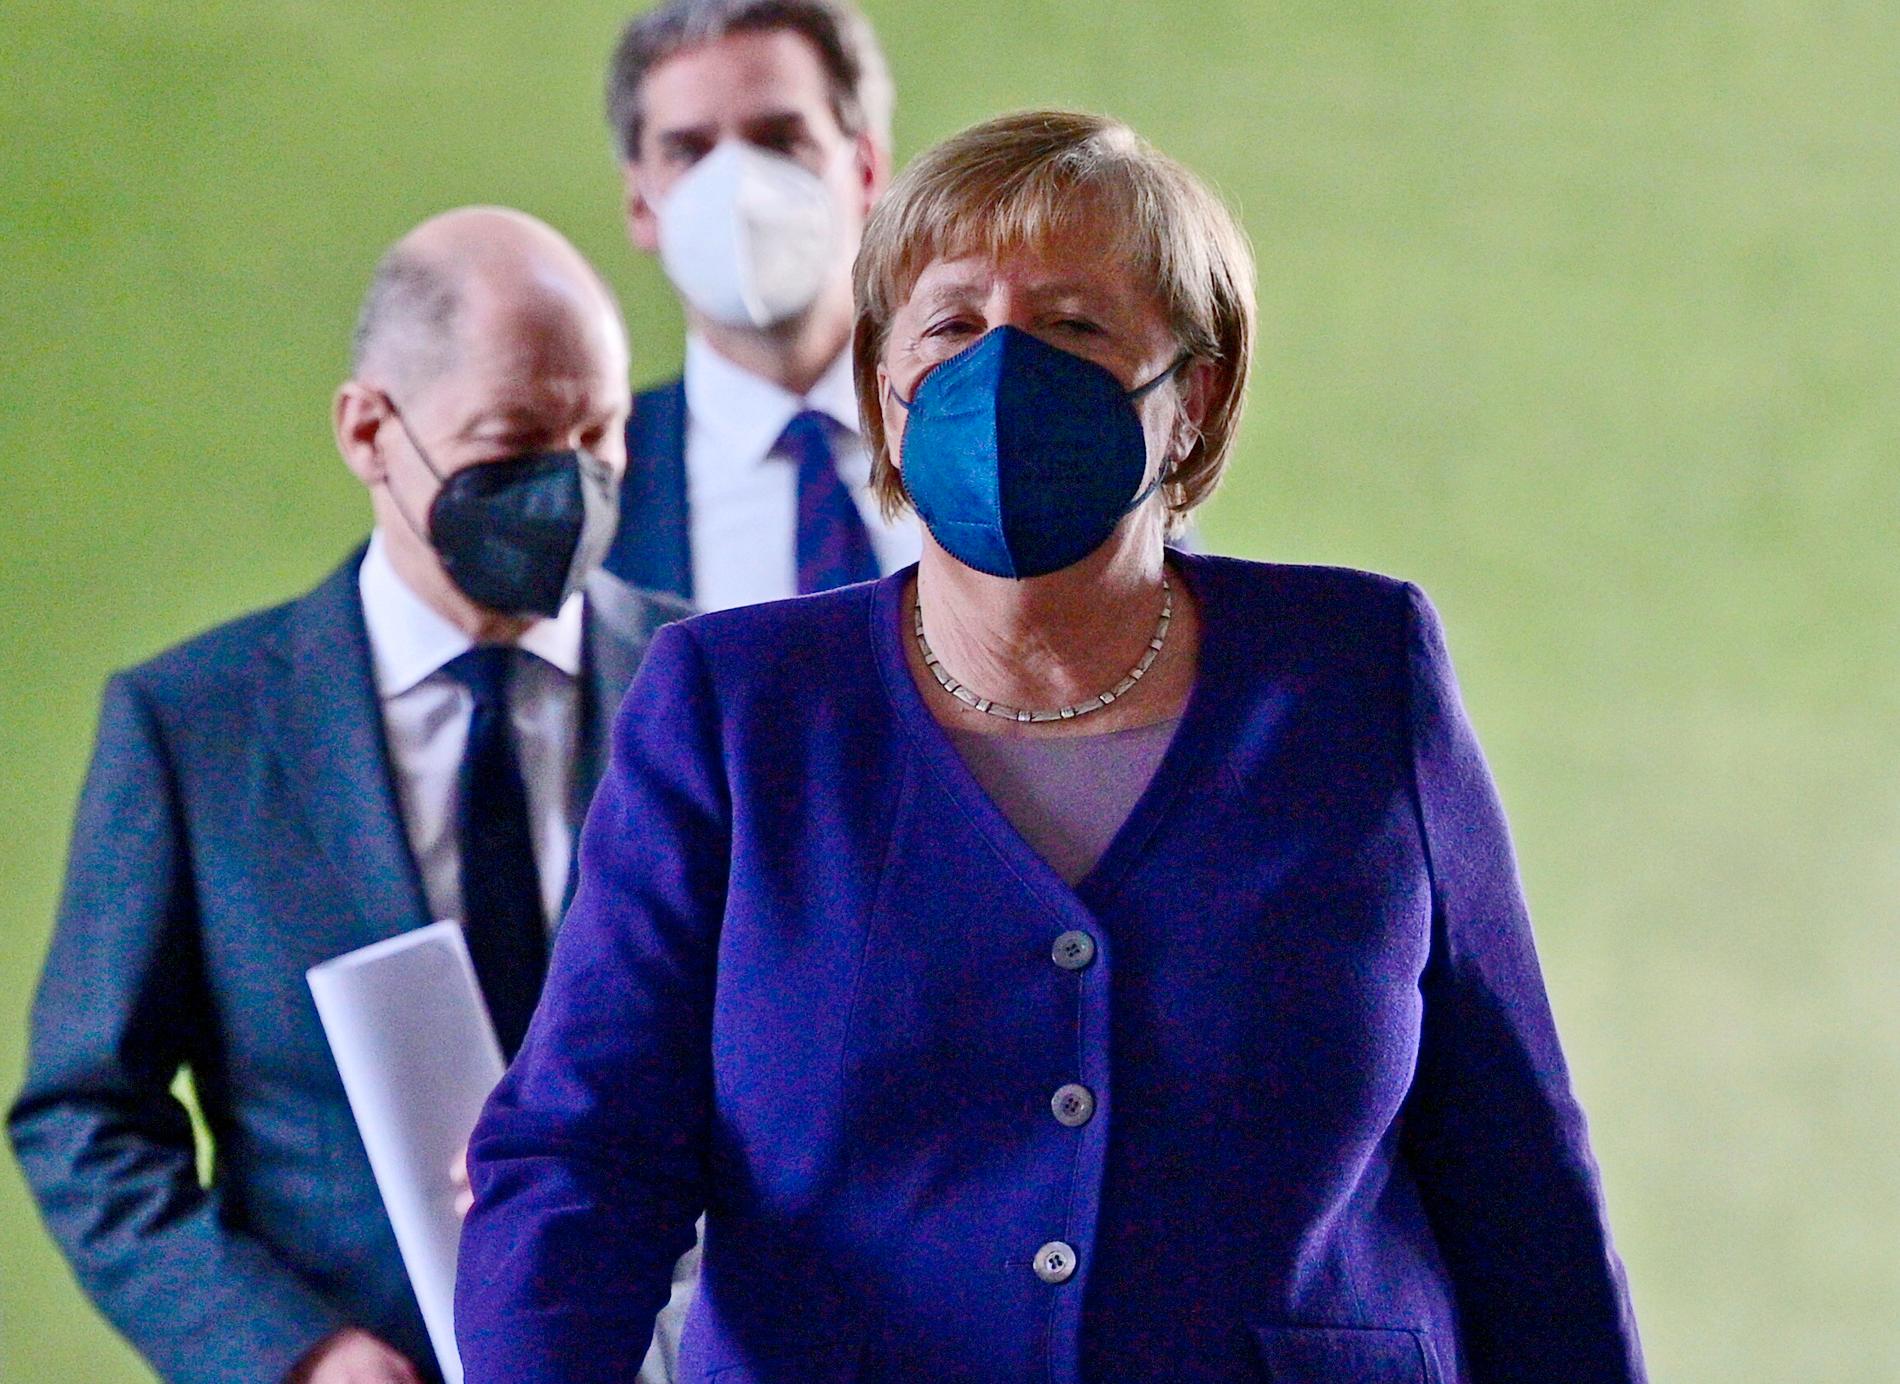 Tysklands avgående förbundskansler Angela Merkel, med tillträdande förbundskansler Olaf Scholz strax bakom, har i samråd med förbundsländernas ledare beslutat att skärpa kraven om vaccinering.